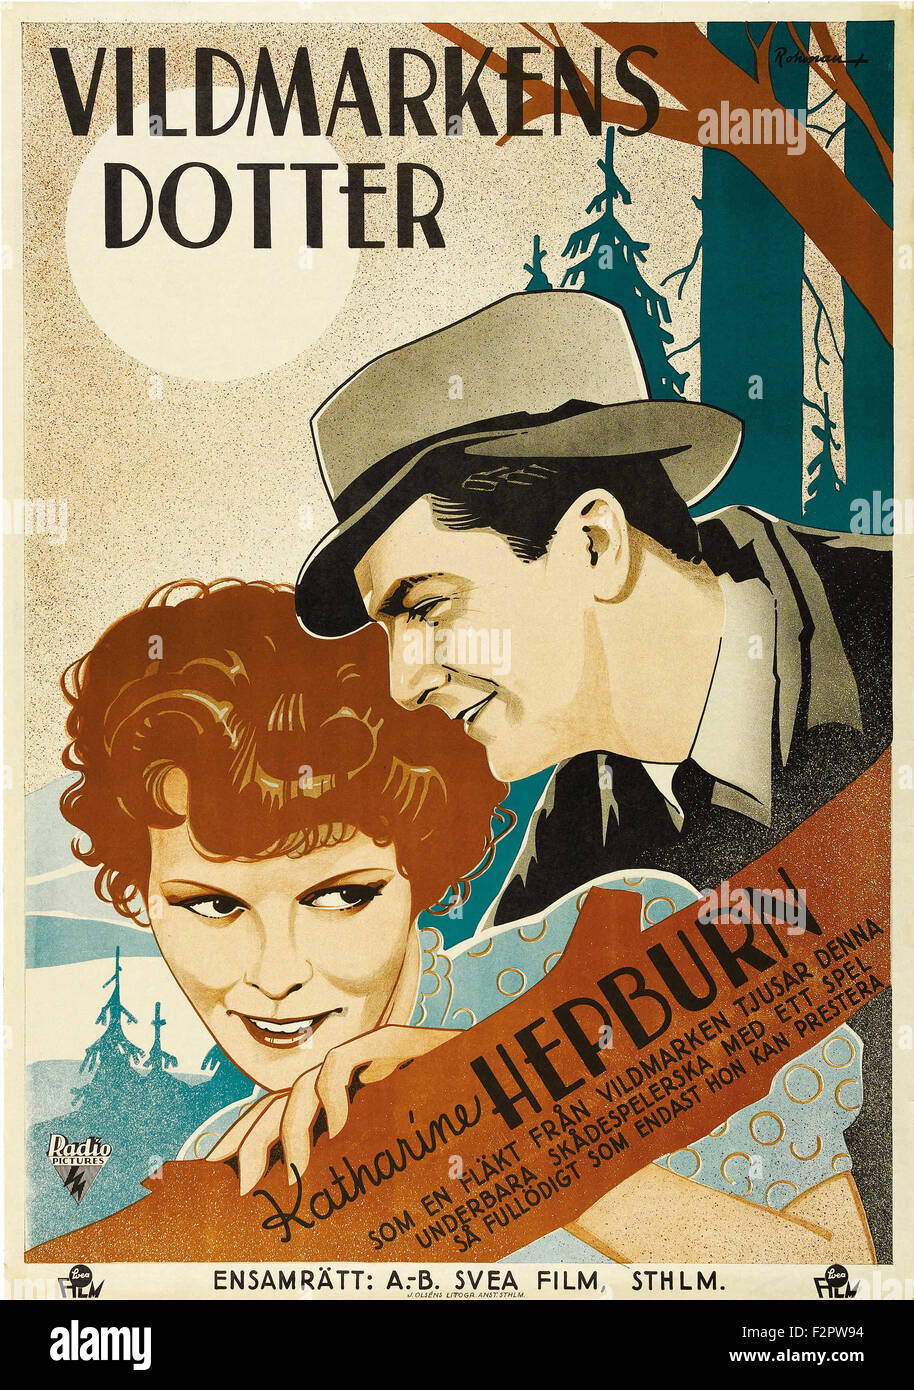 Spitfire (1934) - Movie Poster Stock Photo - Alamy